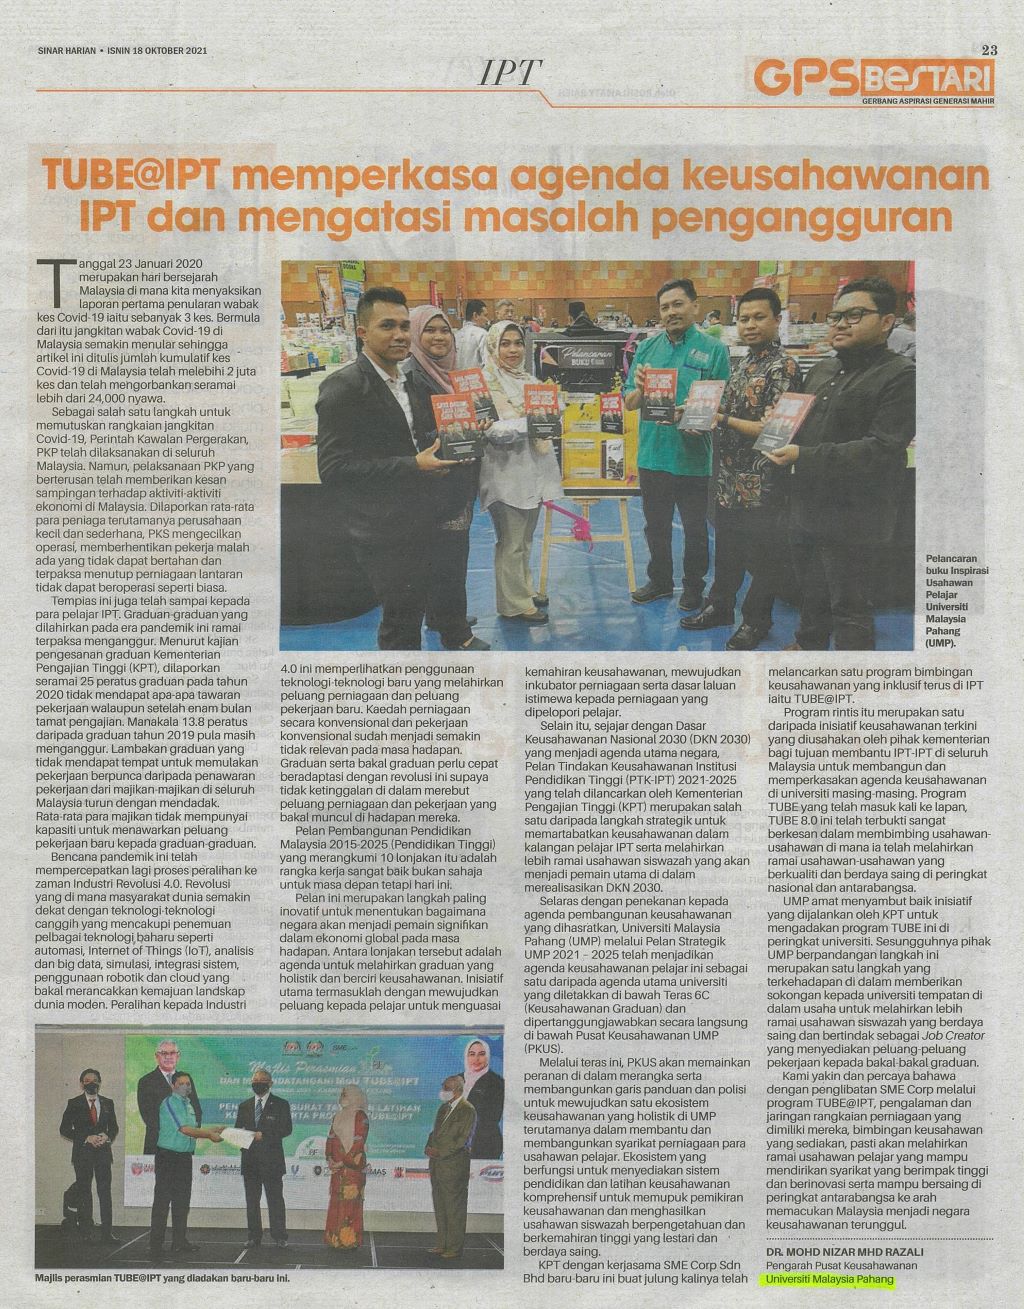 TUBE@IPT memperkasa agenda keusahawanan IPT dan mengatasi masalah pengangguran